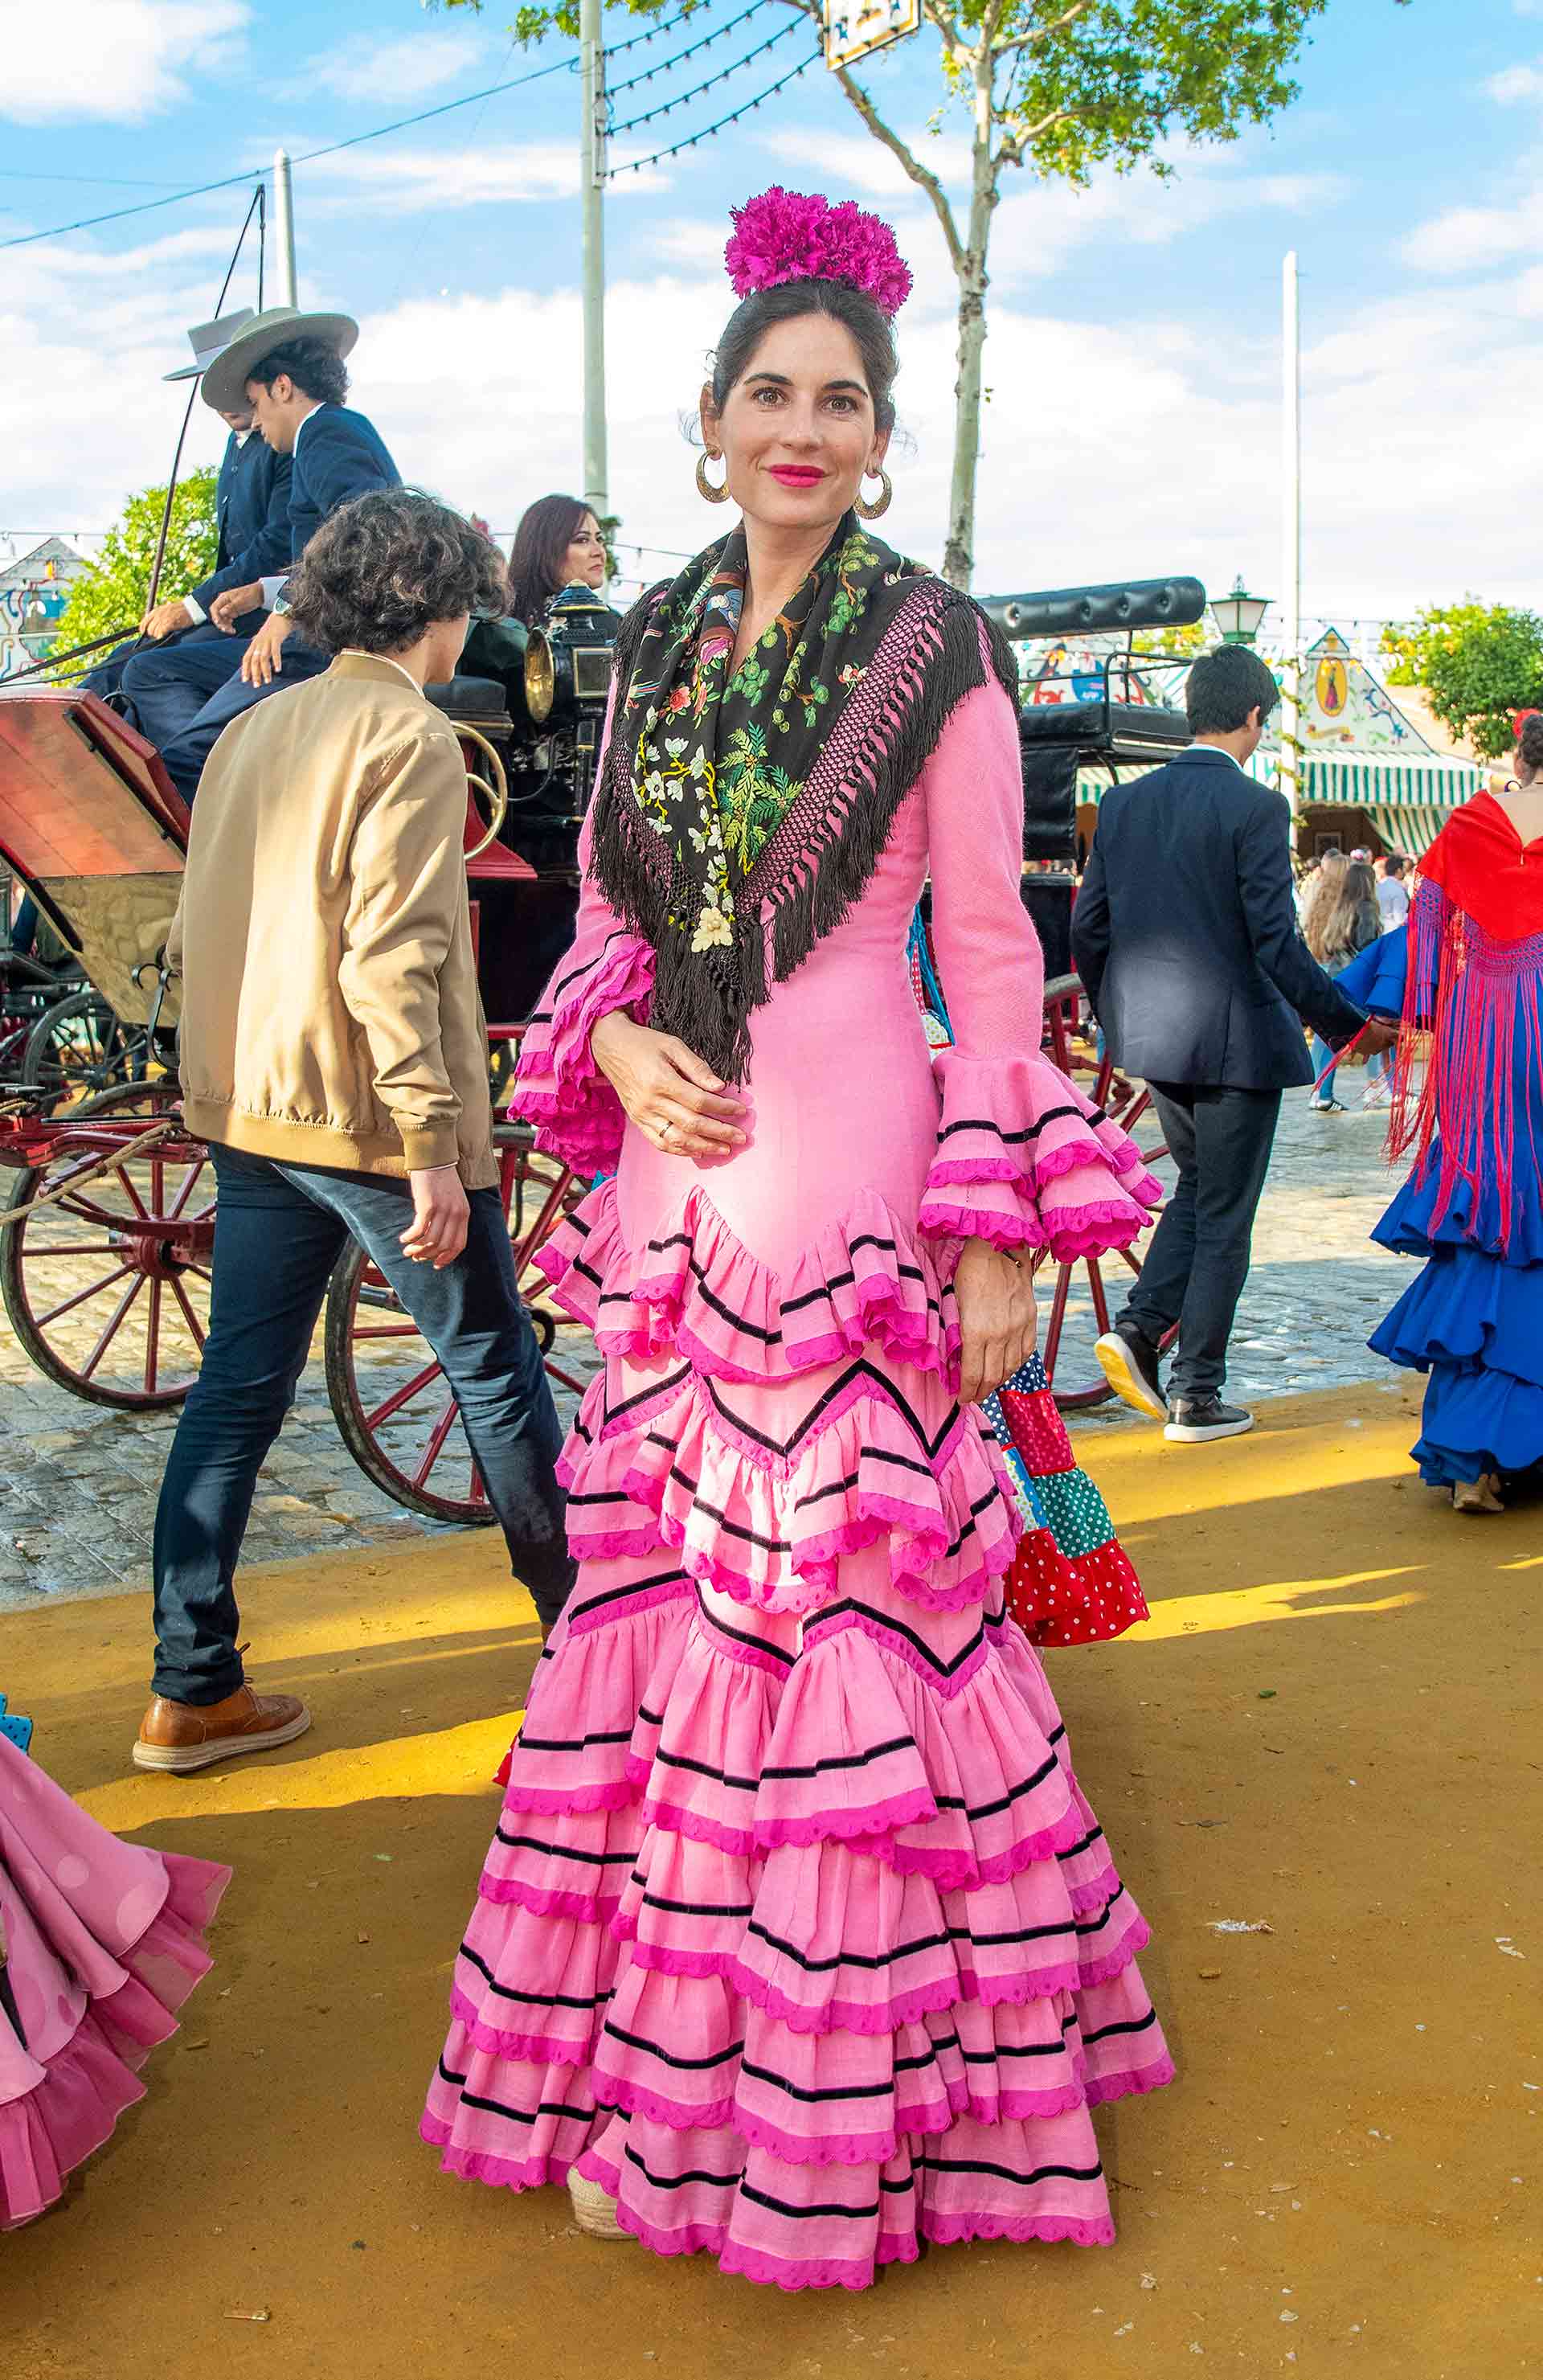 Mar Flores, espectacular vestida de flamenca en la Feria de Abril